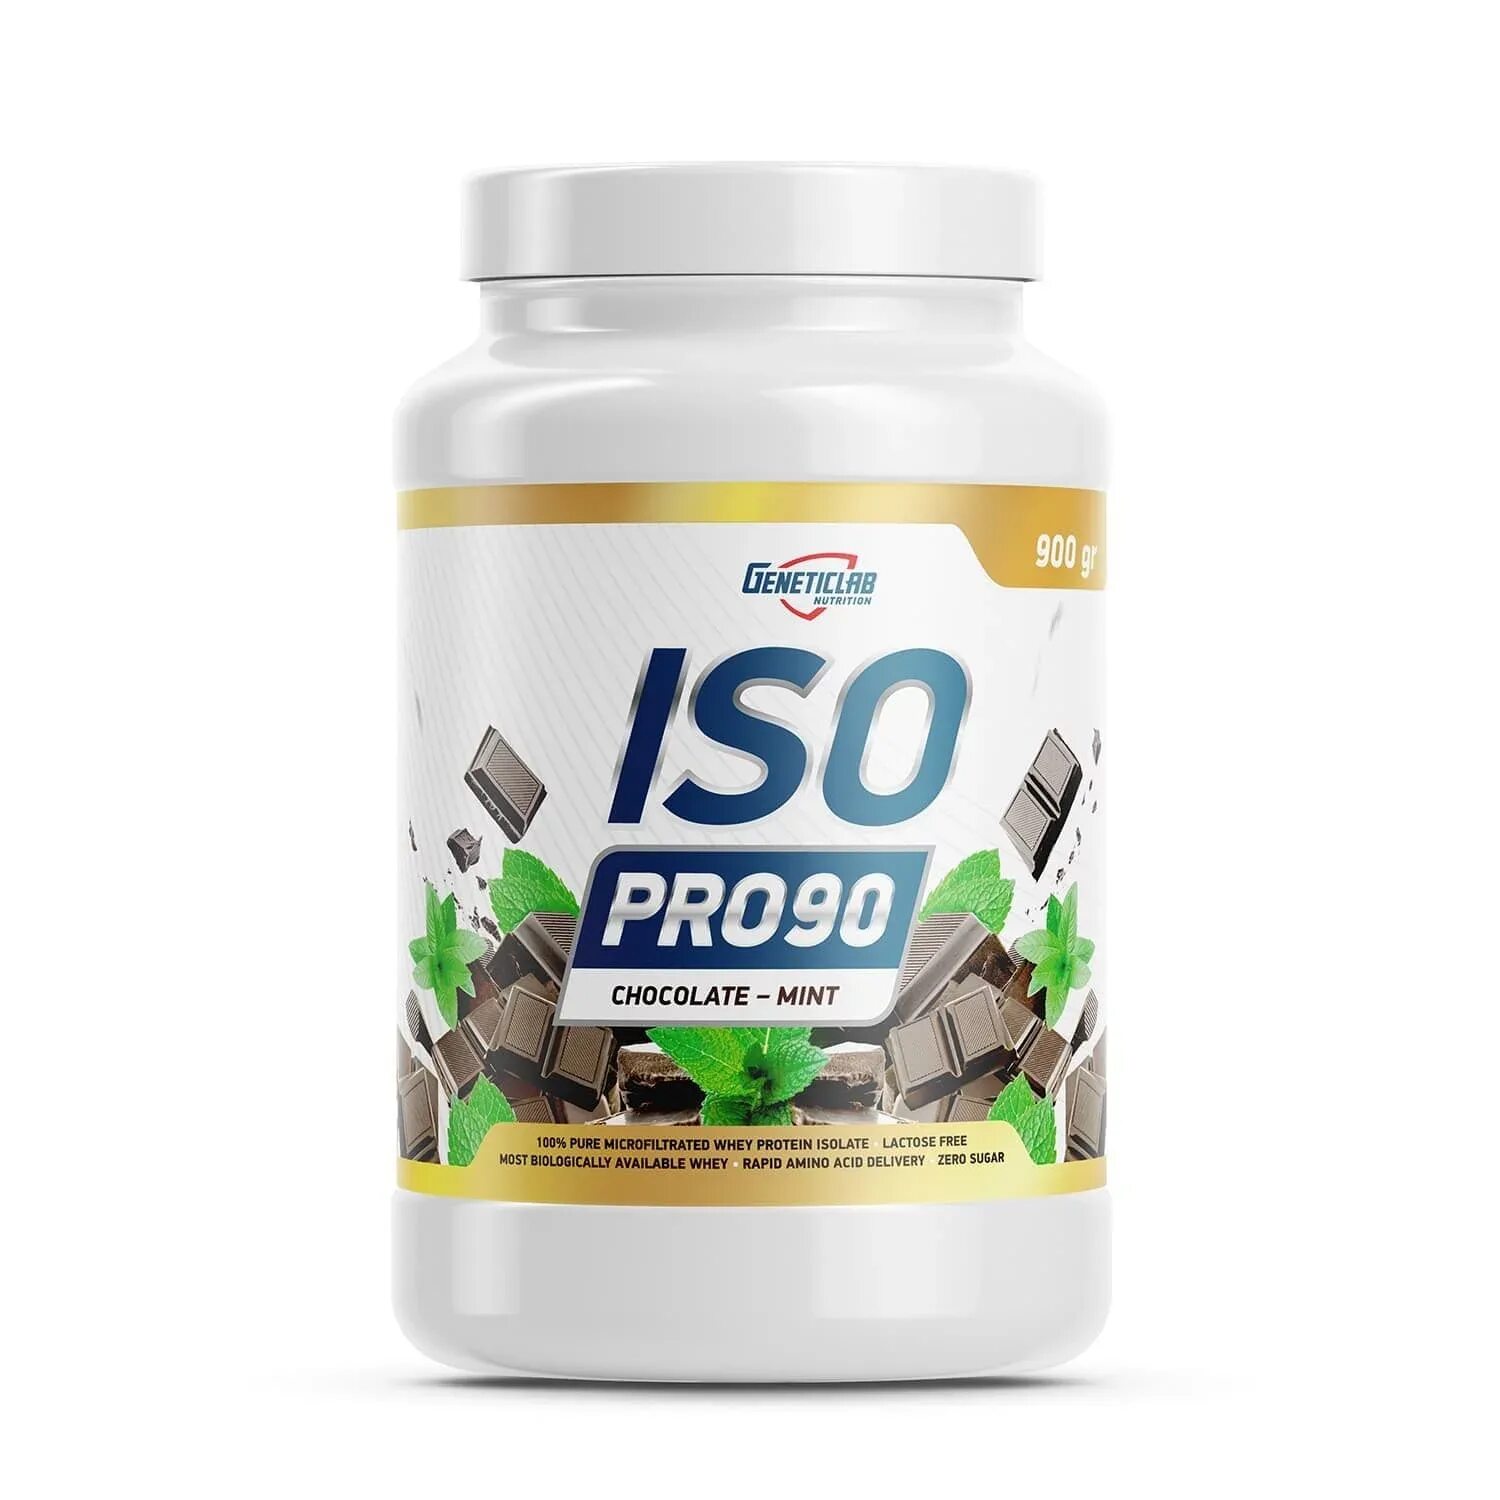 Протеин изолят белка. Geneticlab ISO Pro 90 900г. Geneticlab ISO Whey изолят. Протеин ISO Pro 90. Изолят сывороточного протеина.